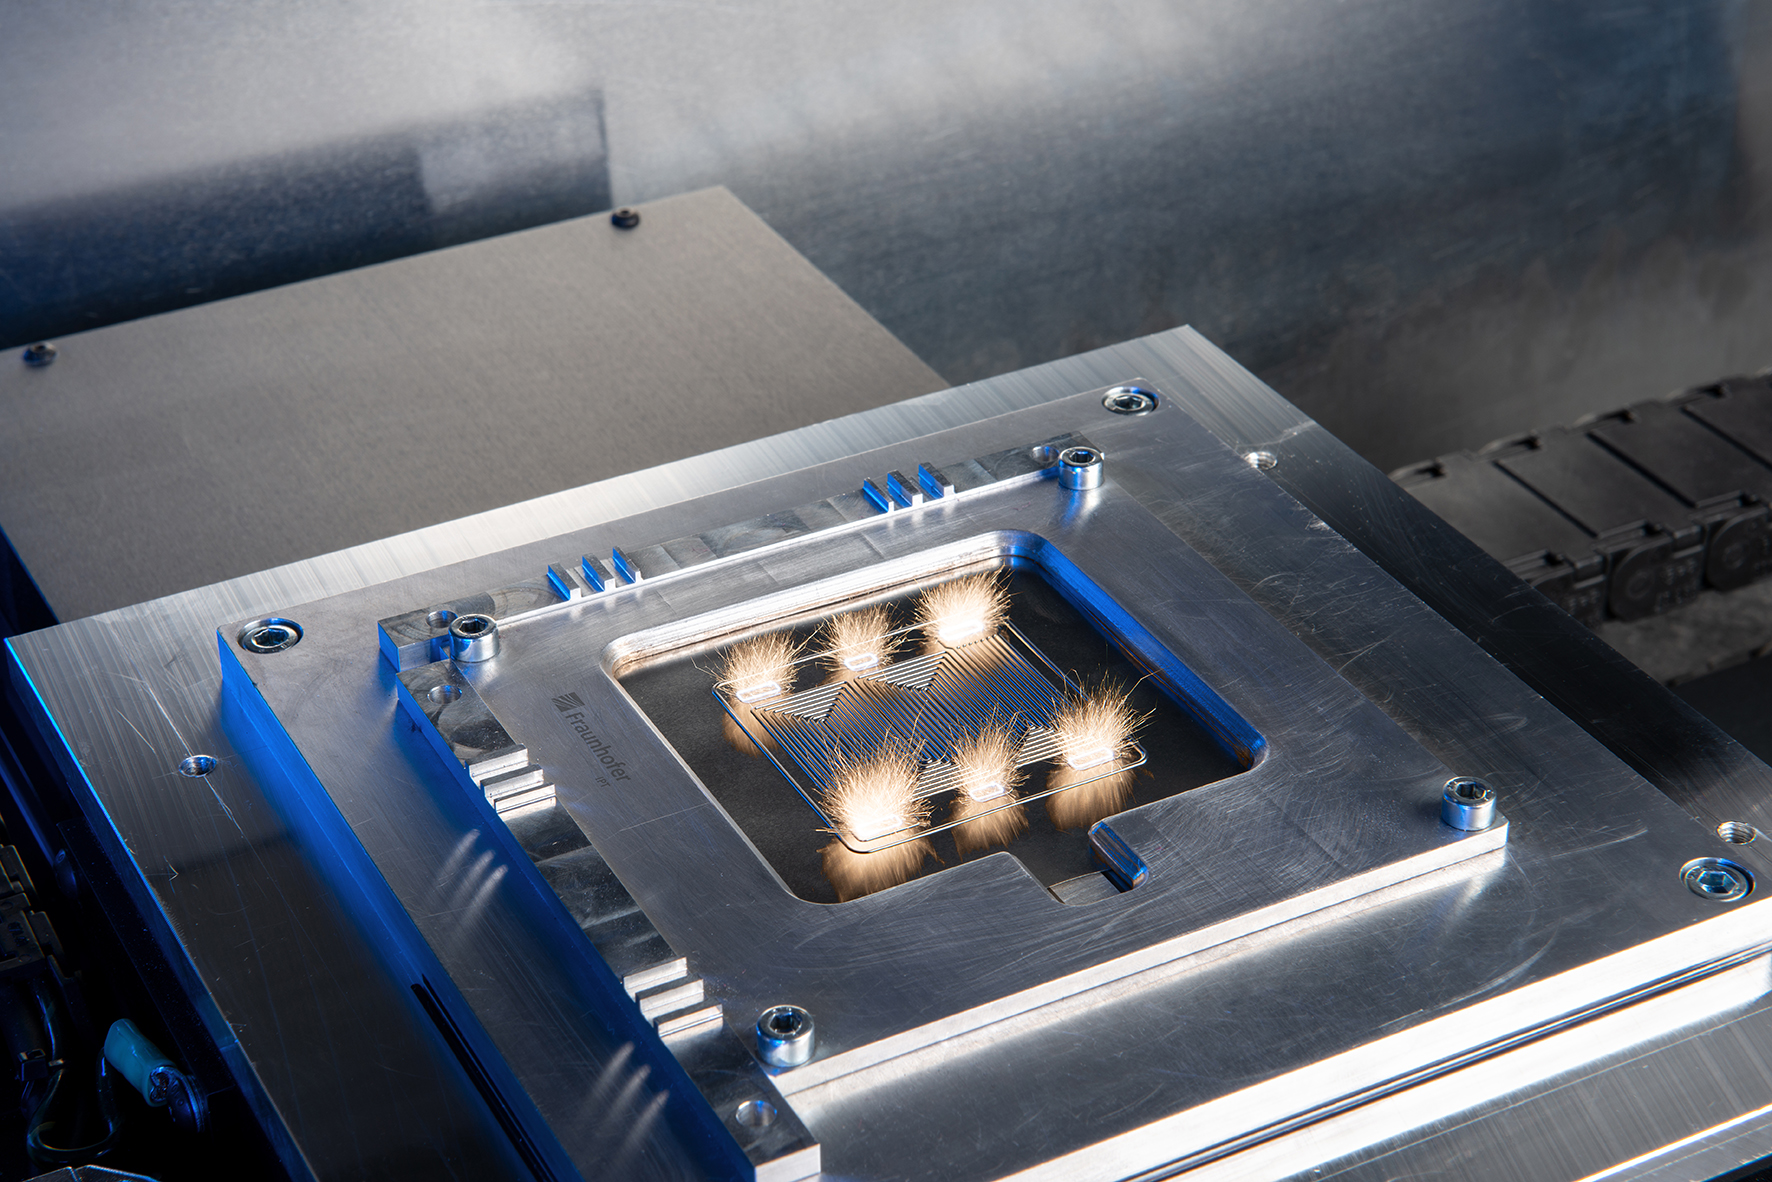 In der durchgängigen Produktionsanlage am Fraunhofer IPT können Brennstoffzellen-Komponenten künftig im Sekundentakt verarbeitet werden.